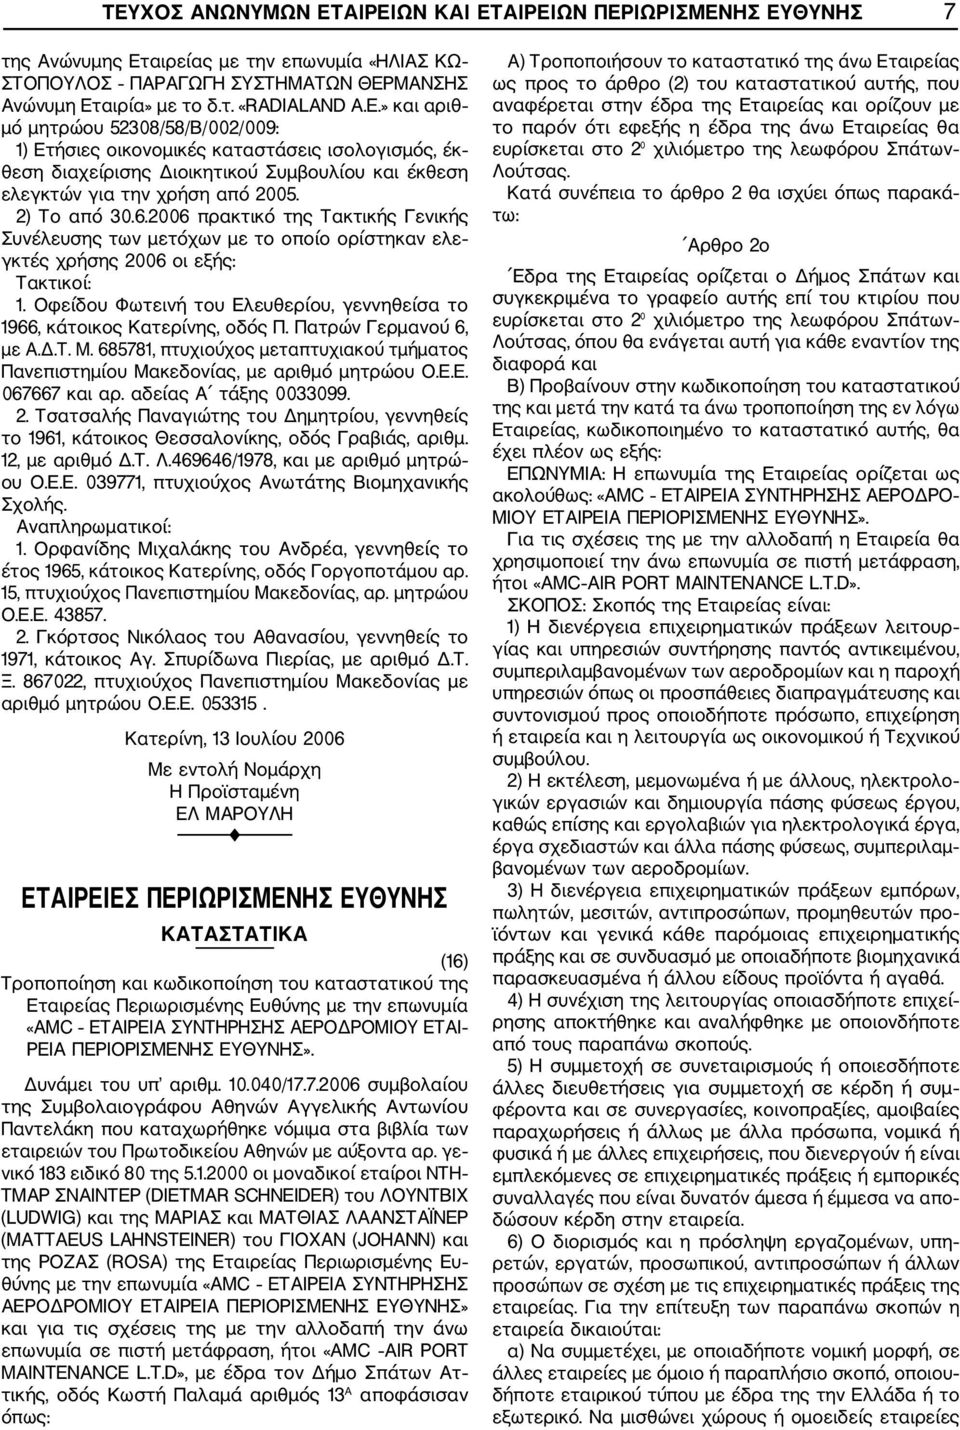 685781, πτυχιούχος μεταπτυχιακού τμήματος Πανεπιστημίου Μακεδονίας, με αριθμό μητρώου Ο.Ε.Ε. 067667 και αρ. αδείας Α τάξης 0033099. 2.